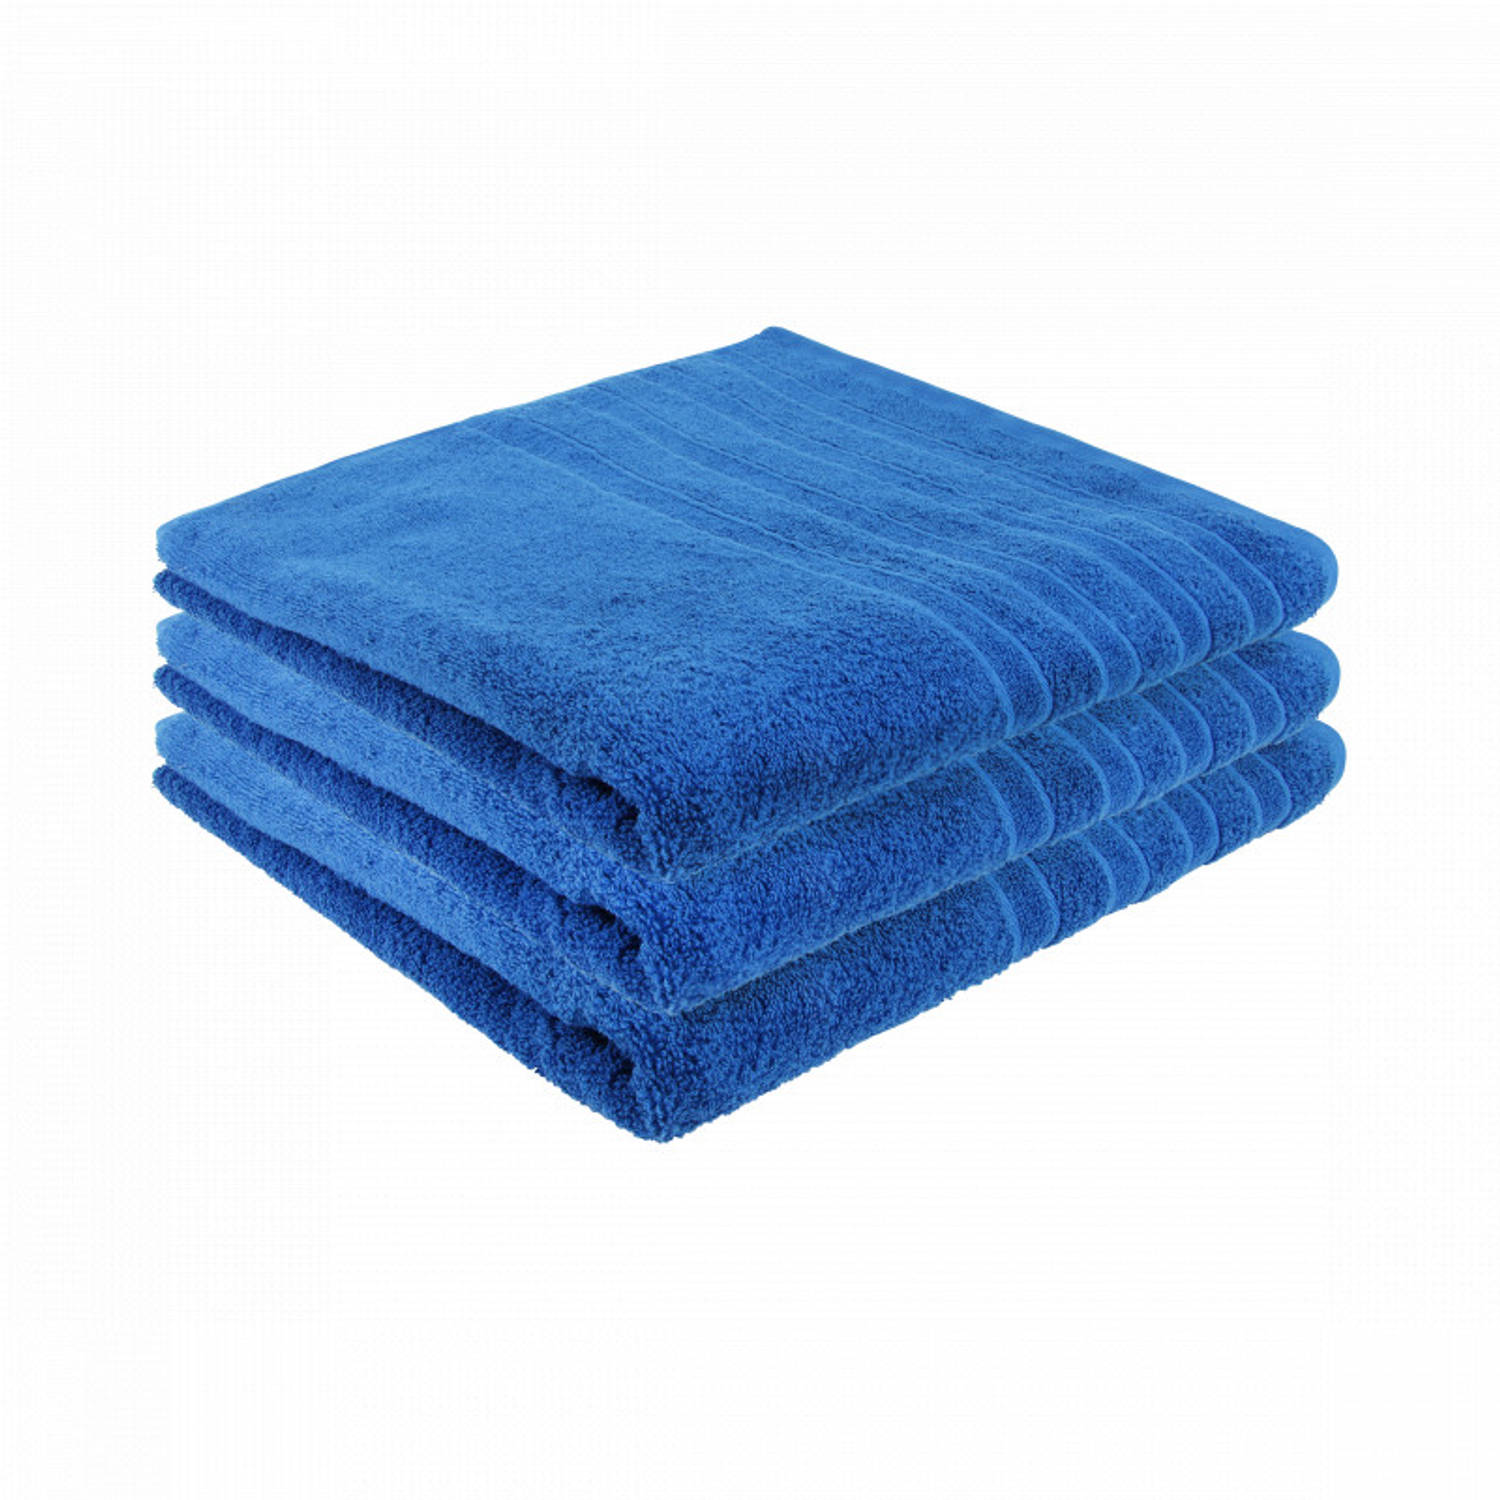 Pure4u Luxe Hotel Handdoek Jeans blauw 3 stuks 70x140cm 550